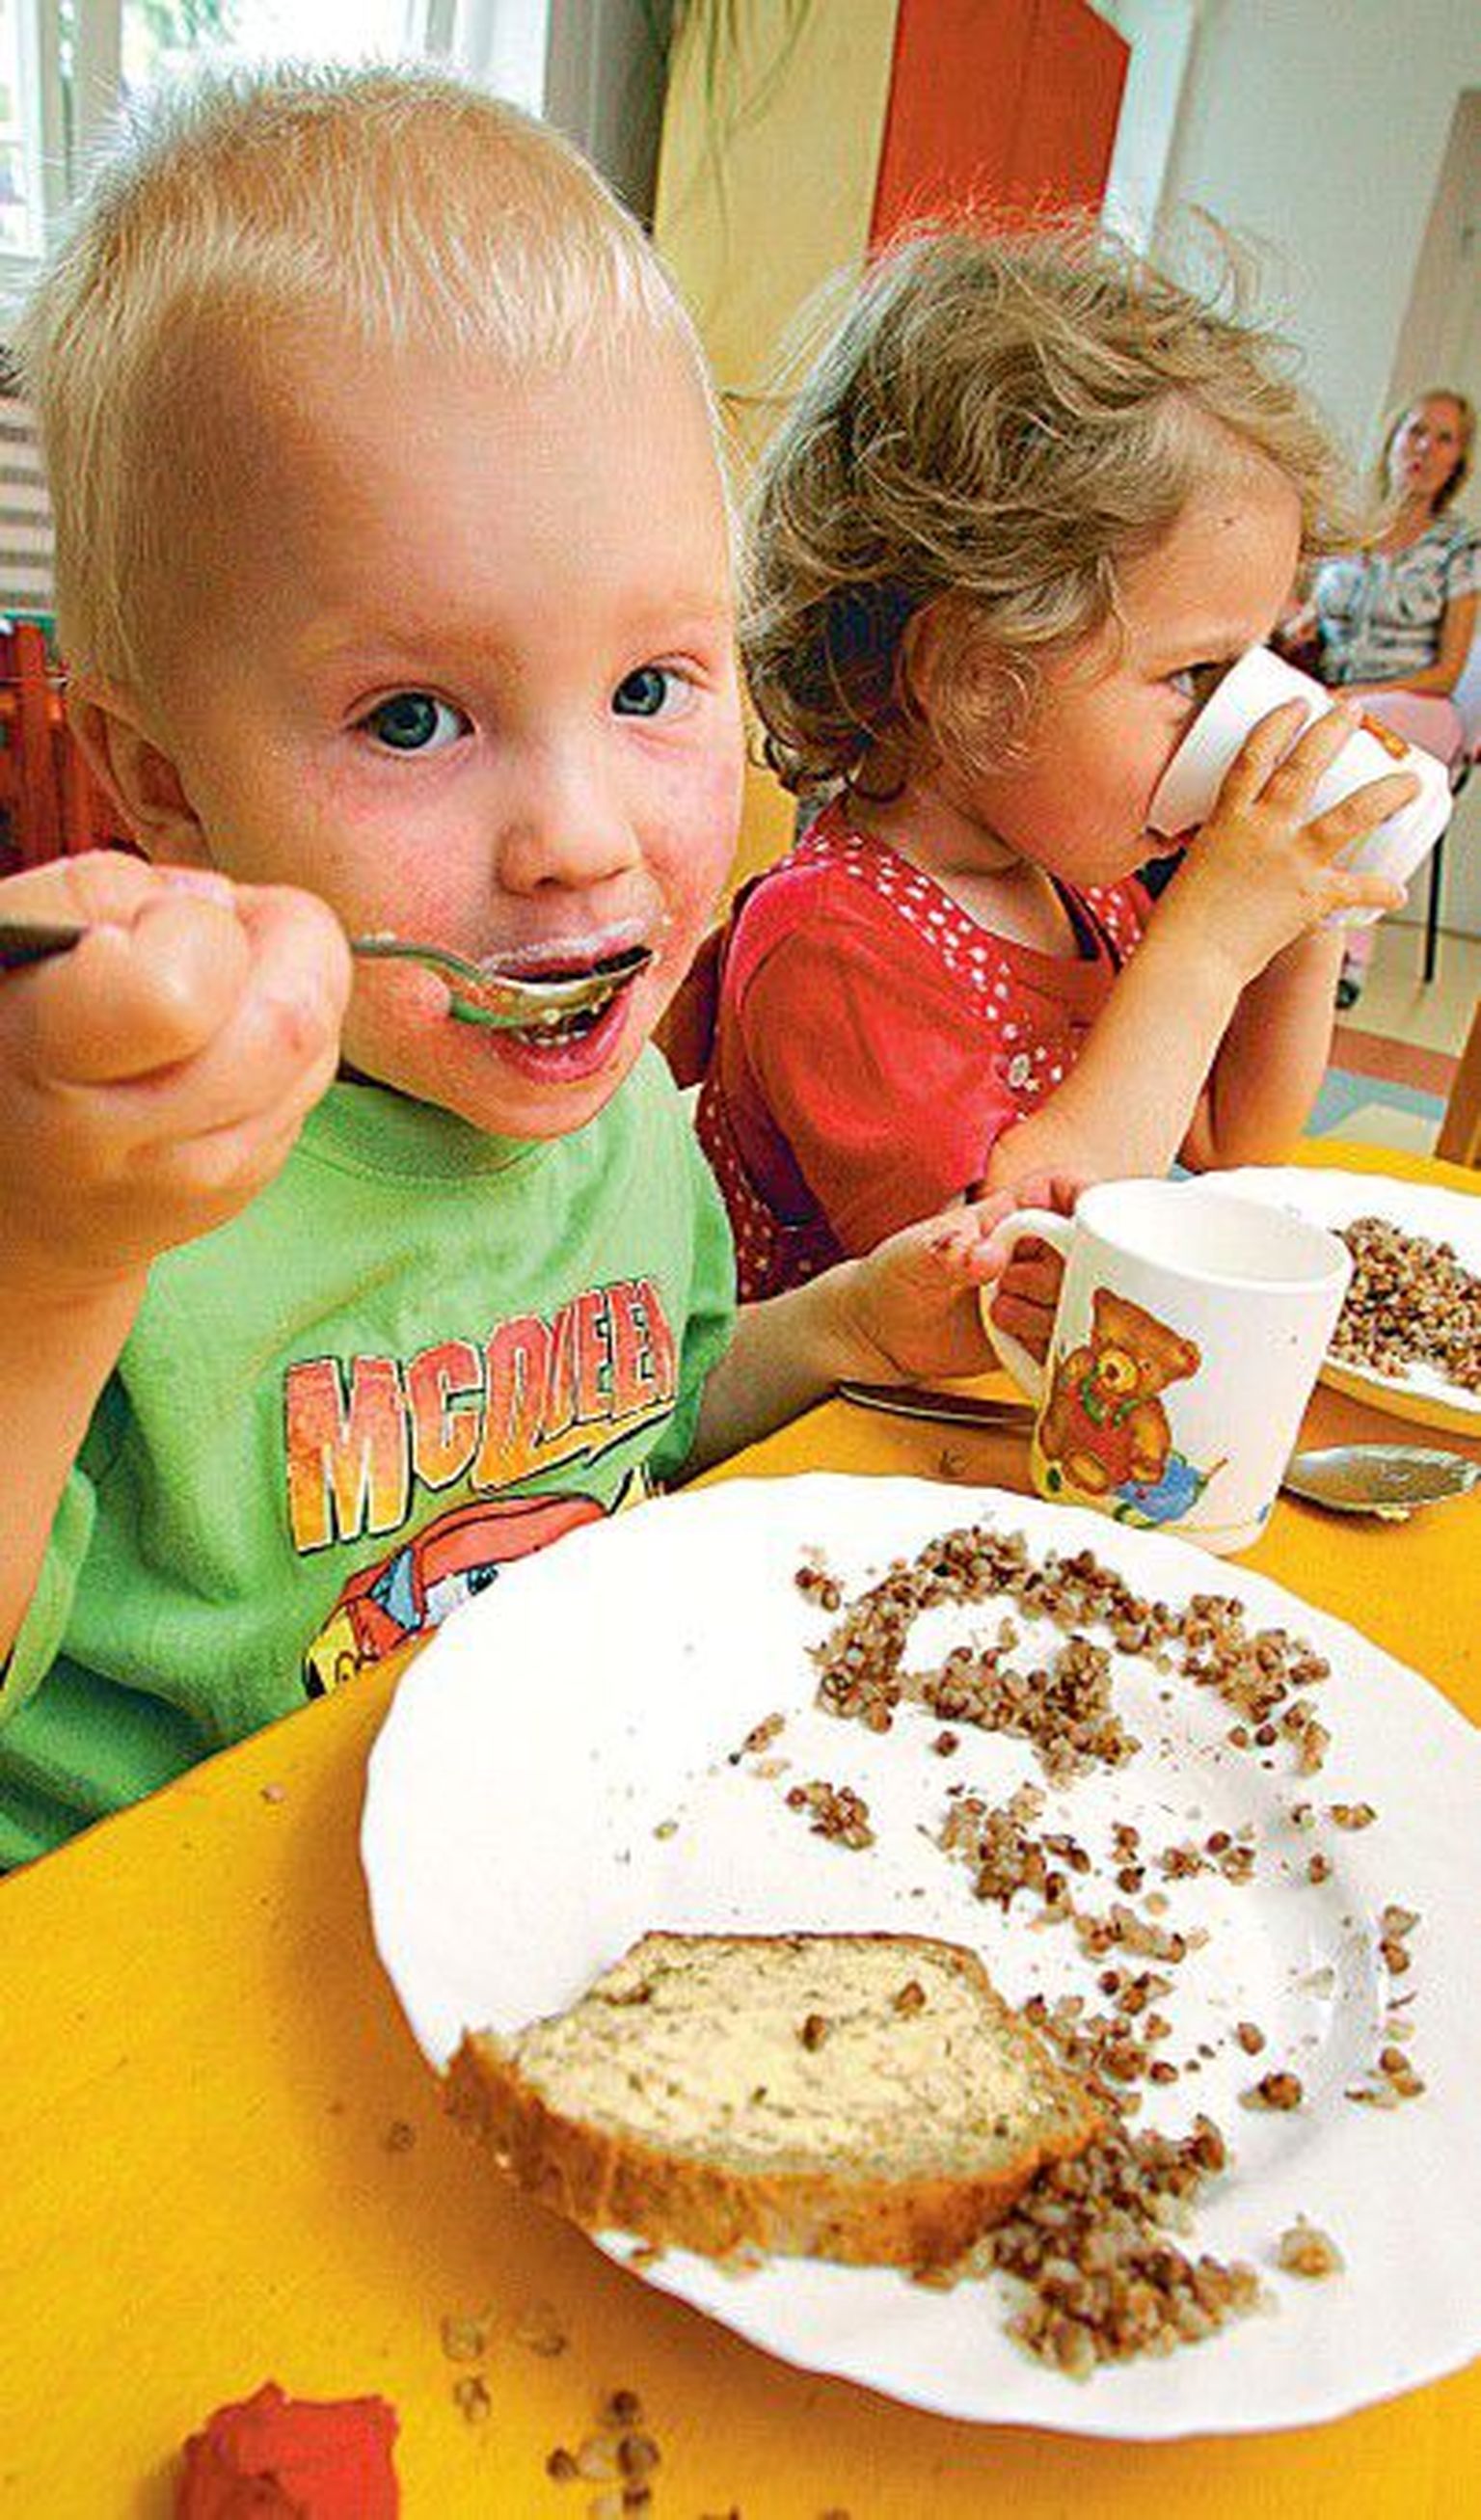 Tallinna Sipsiku lasteaias sõid eile kolmeaastased Sebastian Richard
Jürna ja Nora Nettan isuga tatraputru.